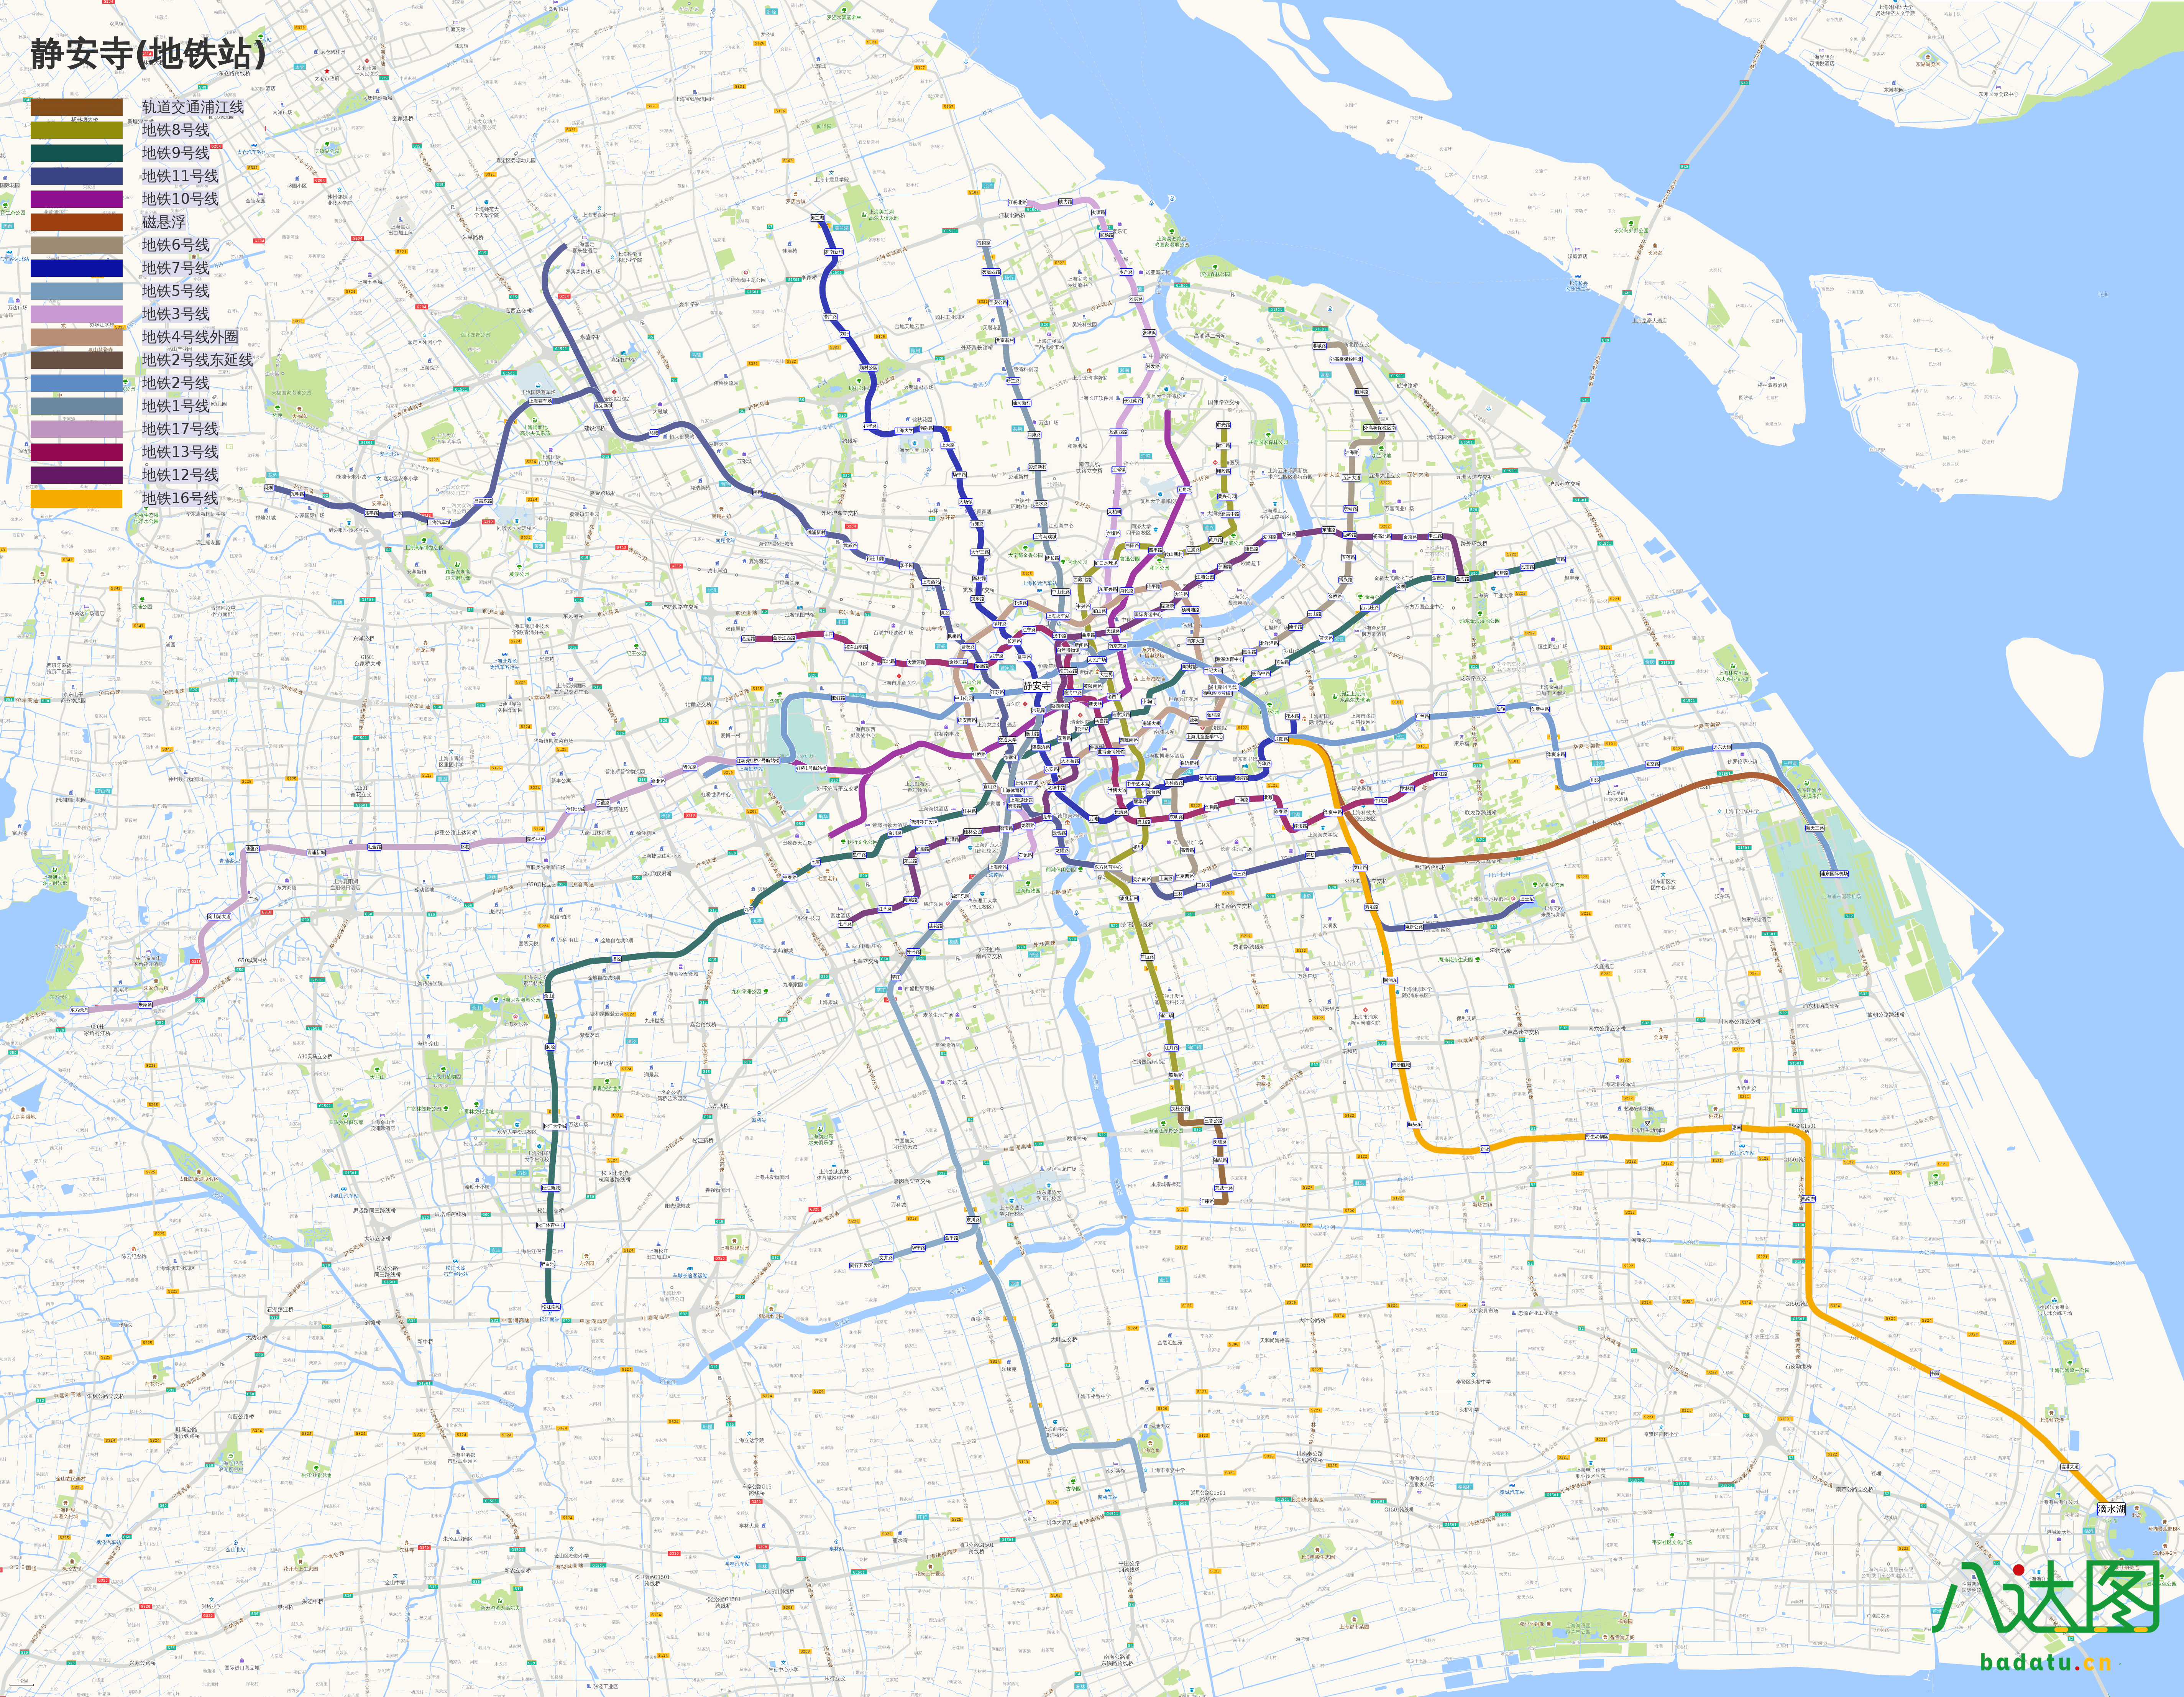 要城市的地铁线路(2019年春季地图版)